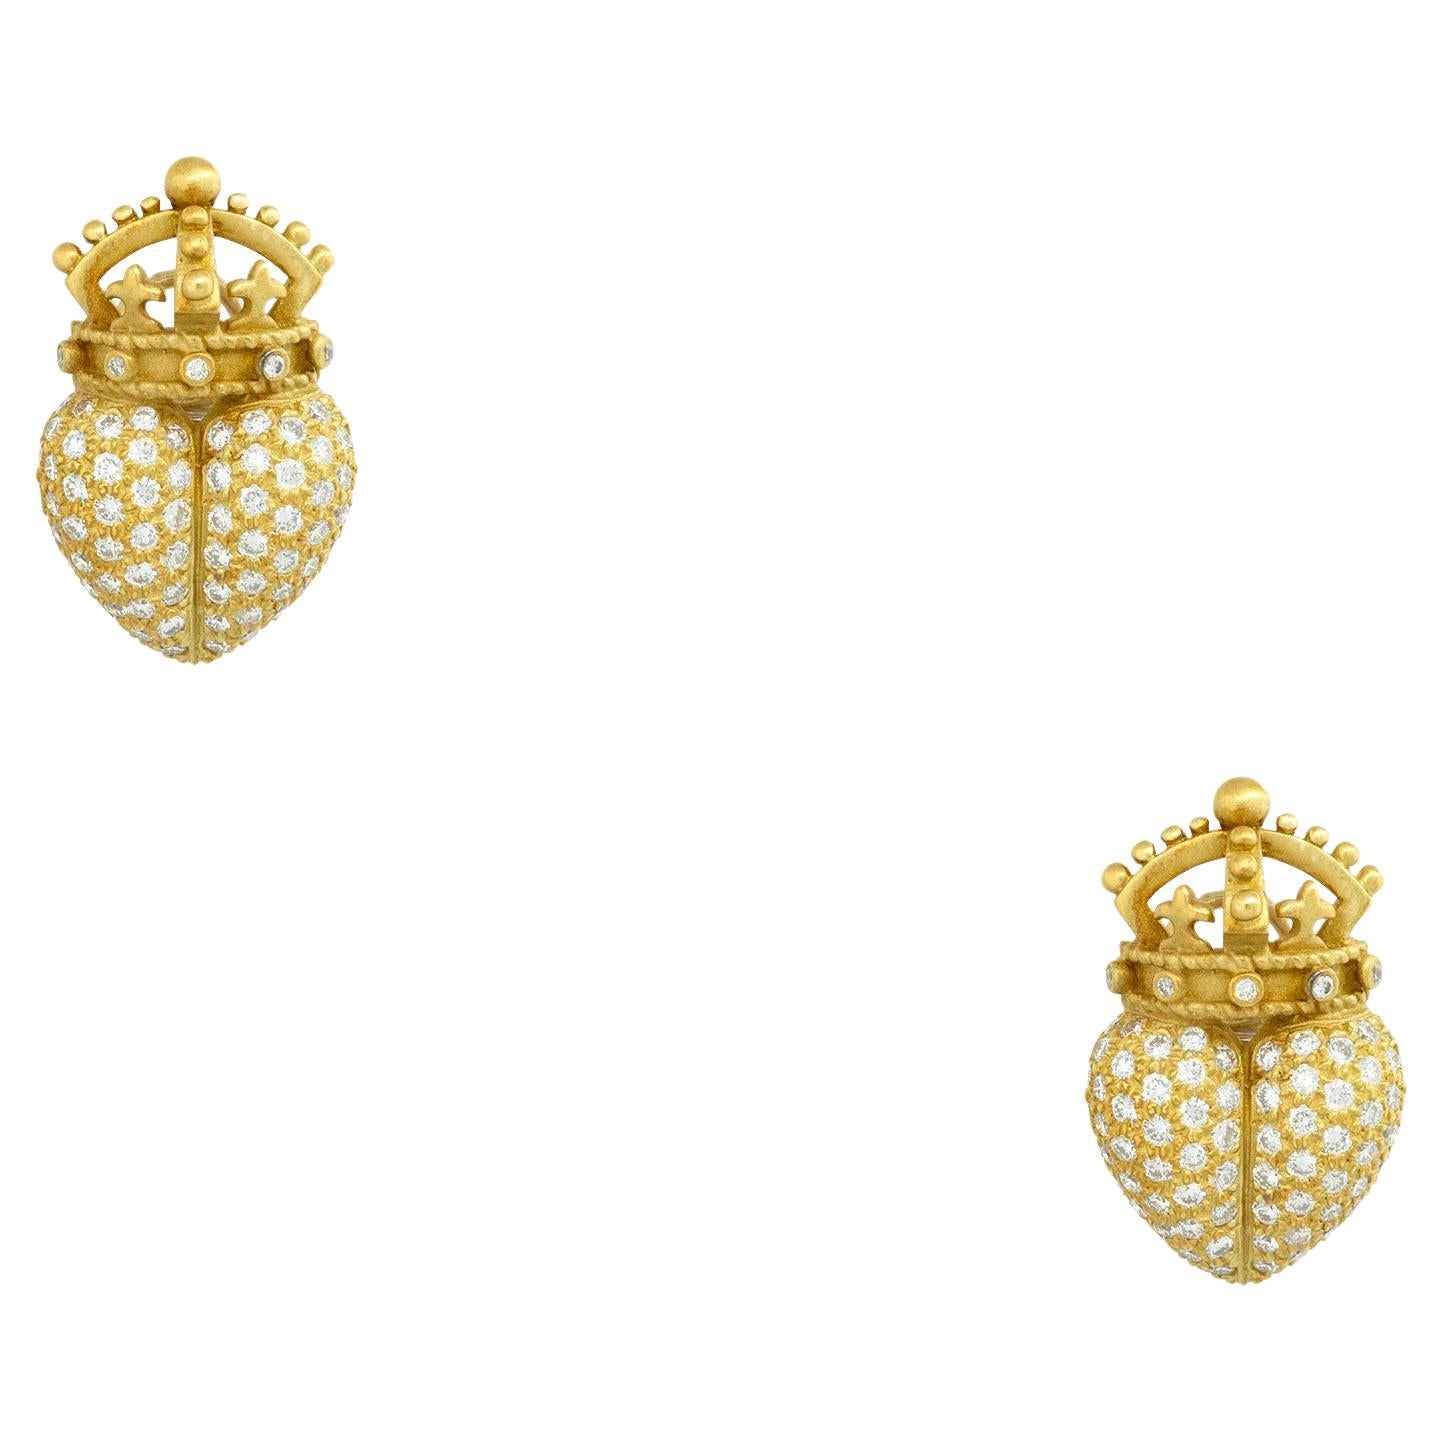 Barry Kieselstein 2 carat Pave Diamond Crown Heart Earrings 18 Karat In Stock For Sale